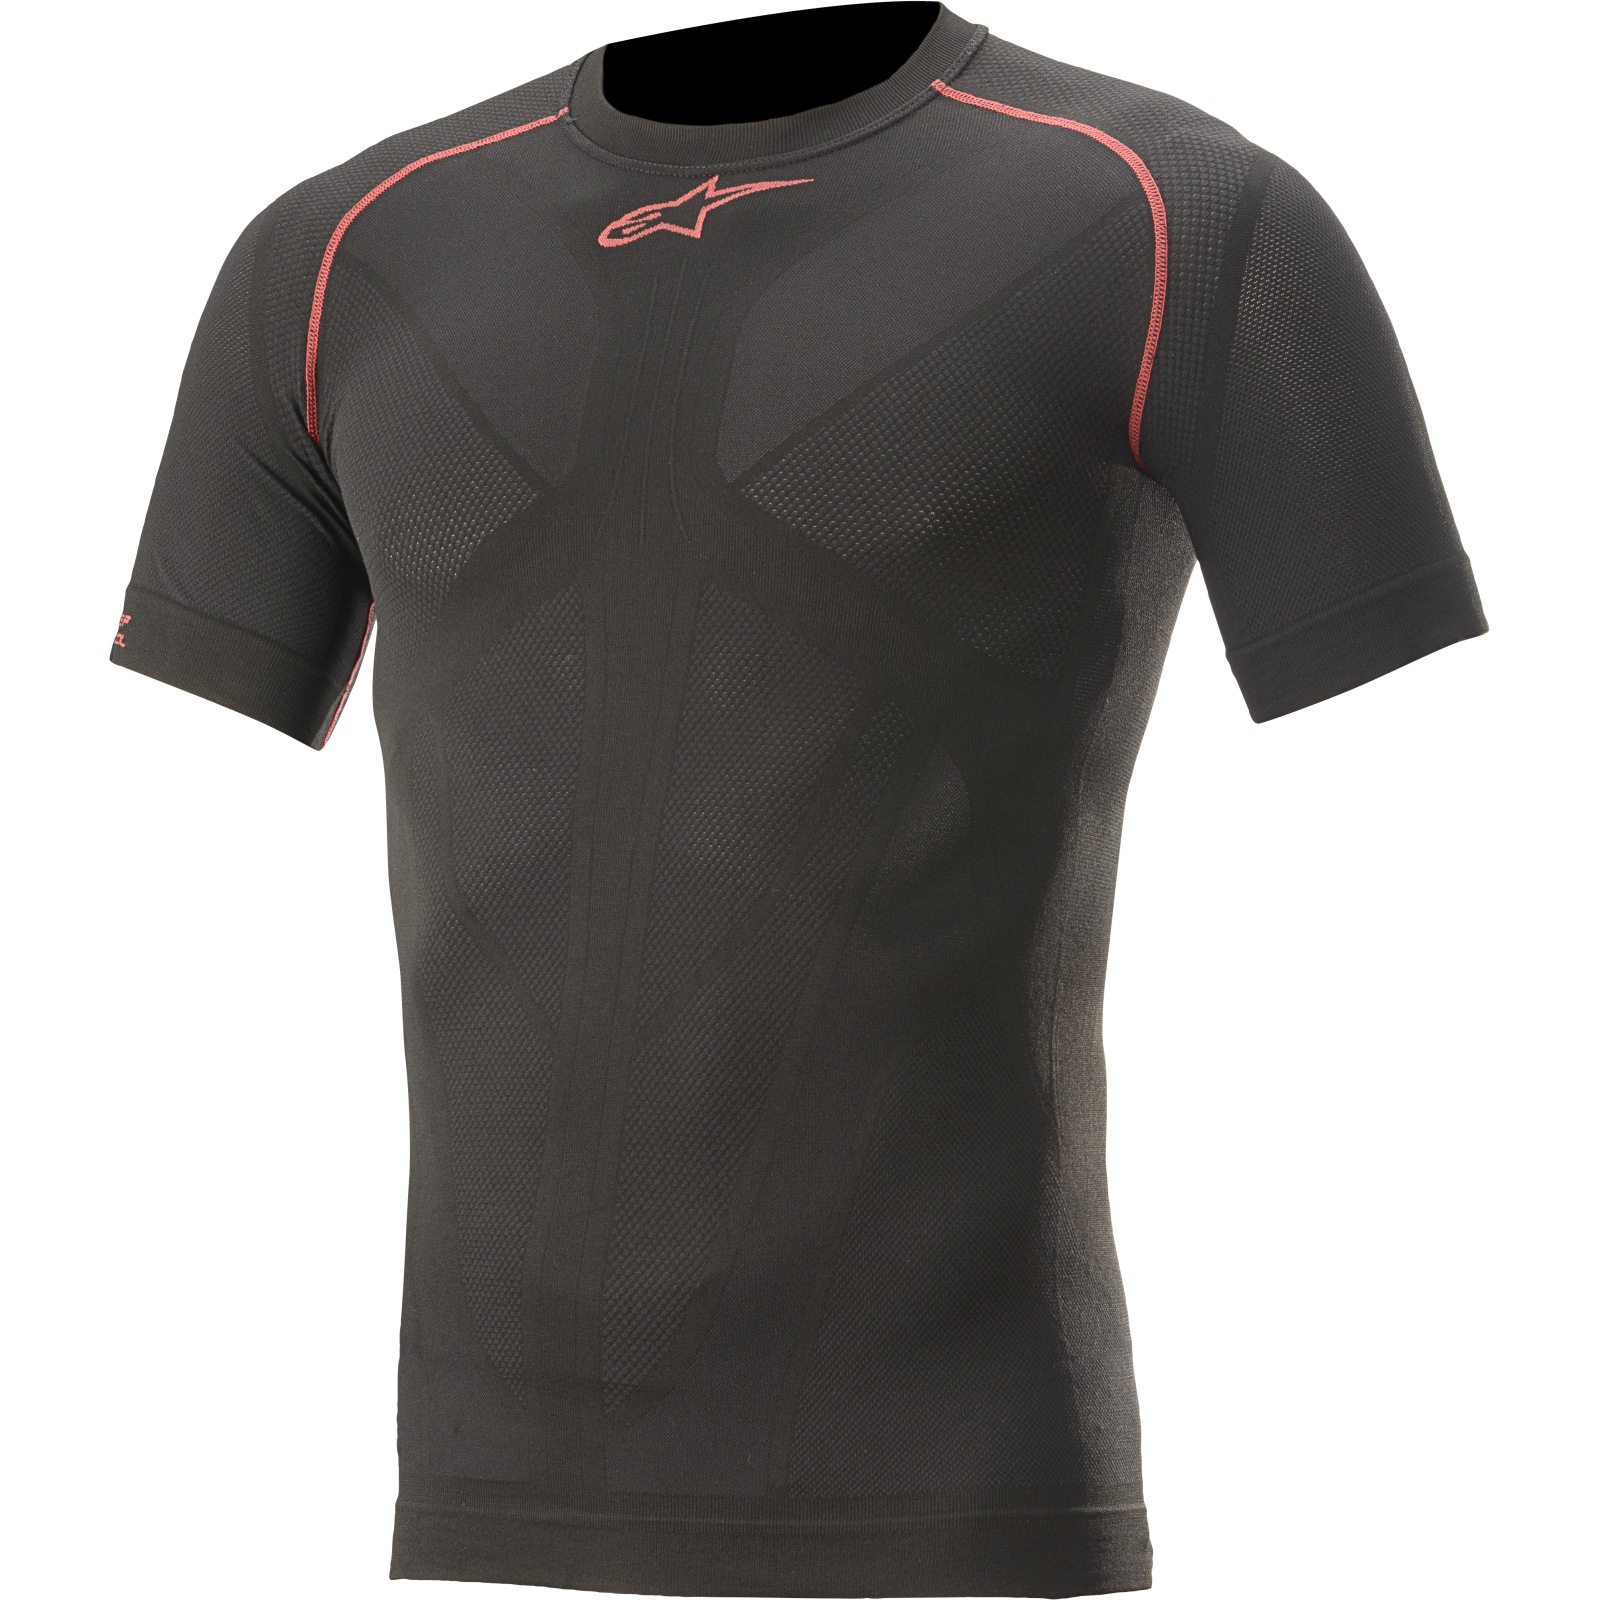 Produktbild von Alpinestars Ride Tech V2 T-Shirt Herren - schwarz/rot